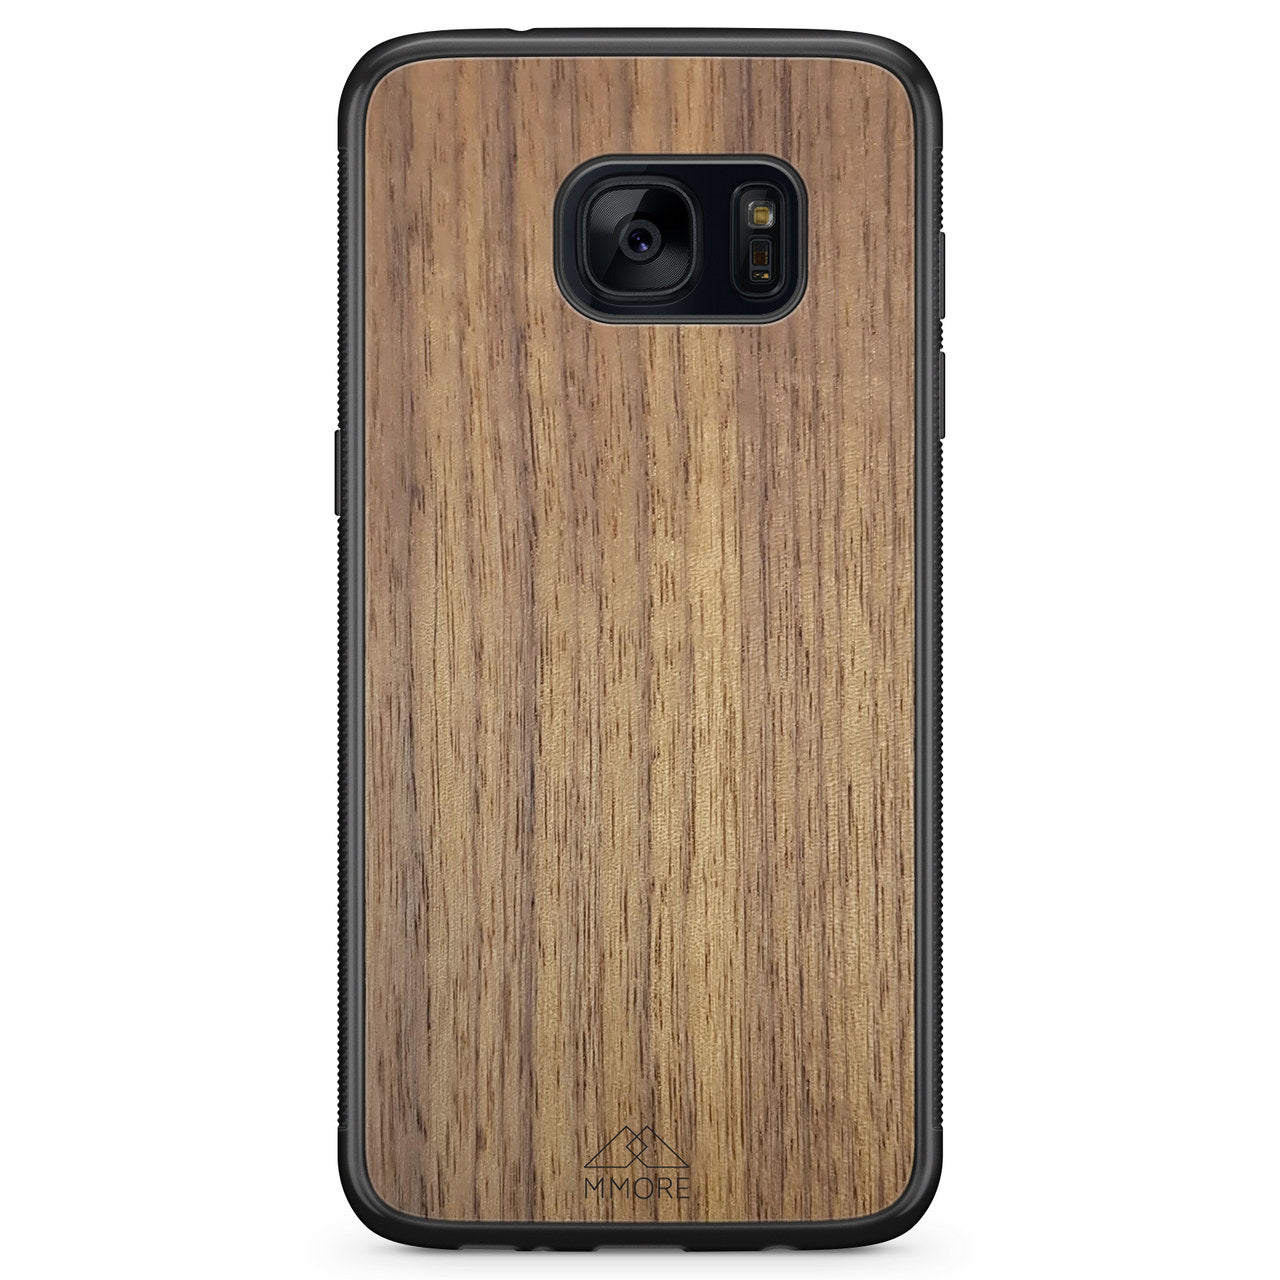 Capa de telefone de madeira americana nogueira para Samsung S7